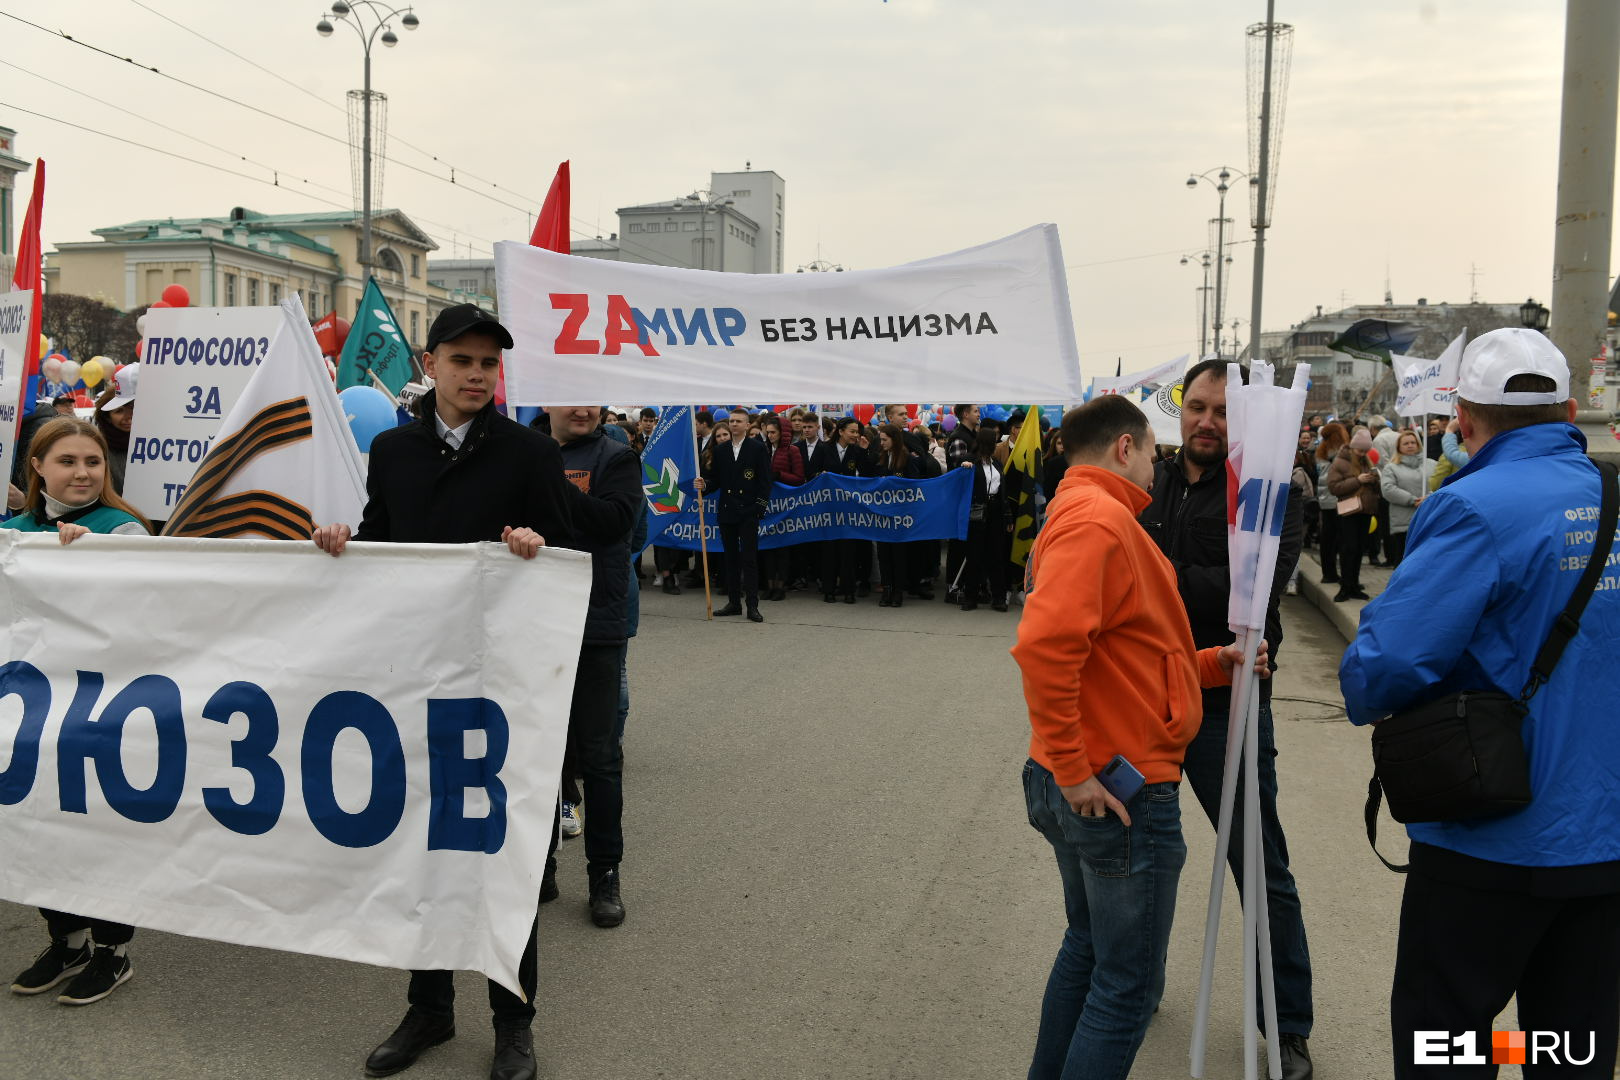 На демонстрации было много лозунгов, напоминающих о проводимой спецоперации на Украине